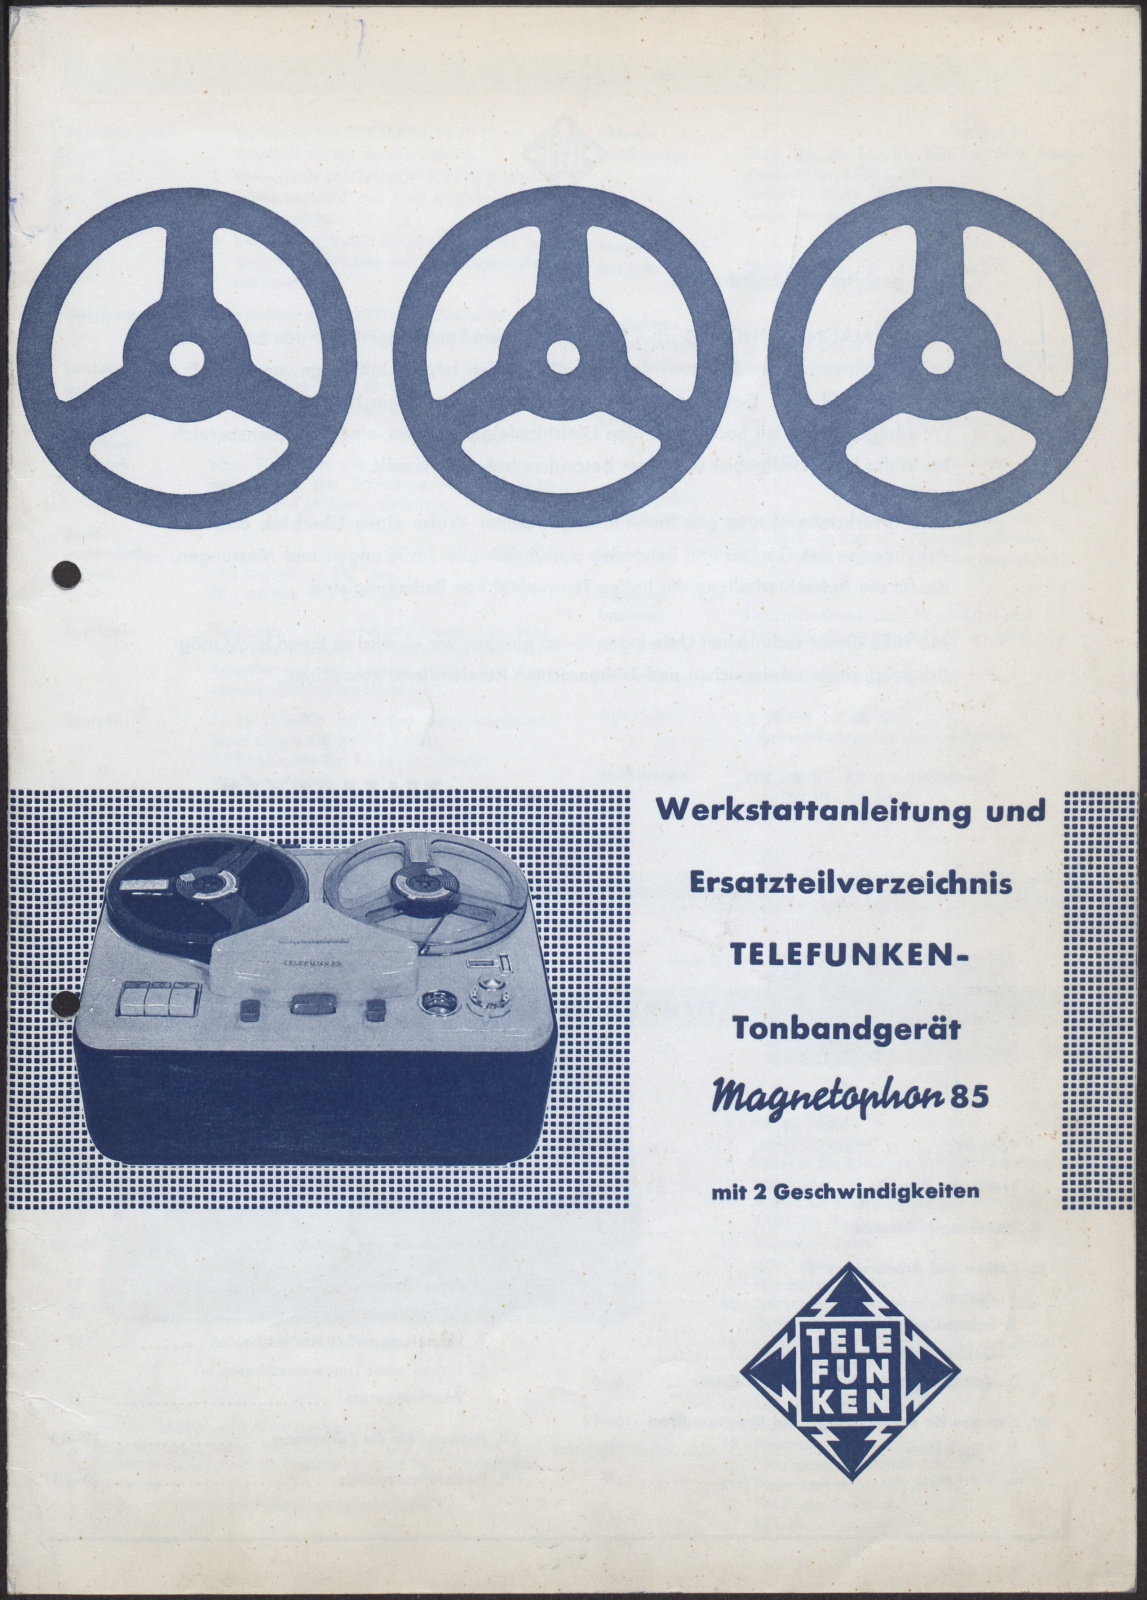 Werkstattanleitung: Telefunken Tonbandgerät Magnetophon 85 mit 2 Geschwindigkeiten (Stiftung Deutsches Technikmuseum Berlin CC0)